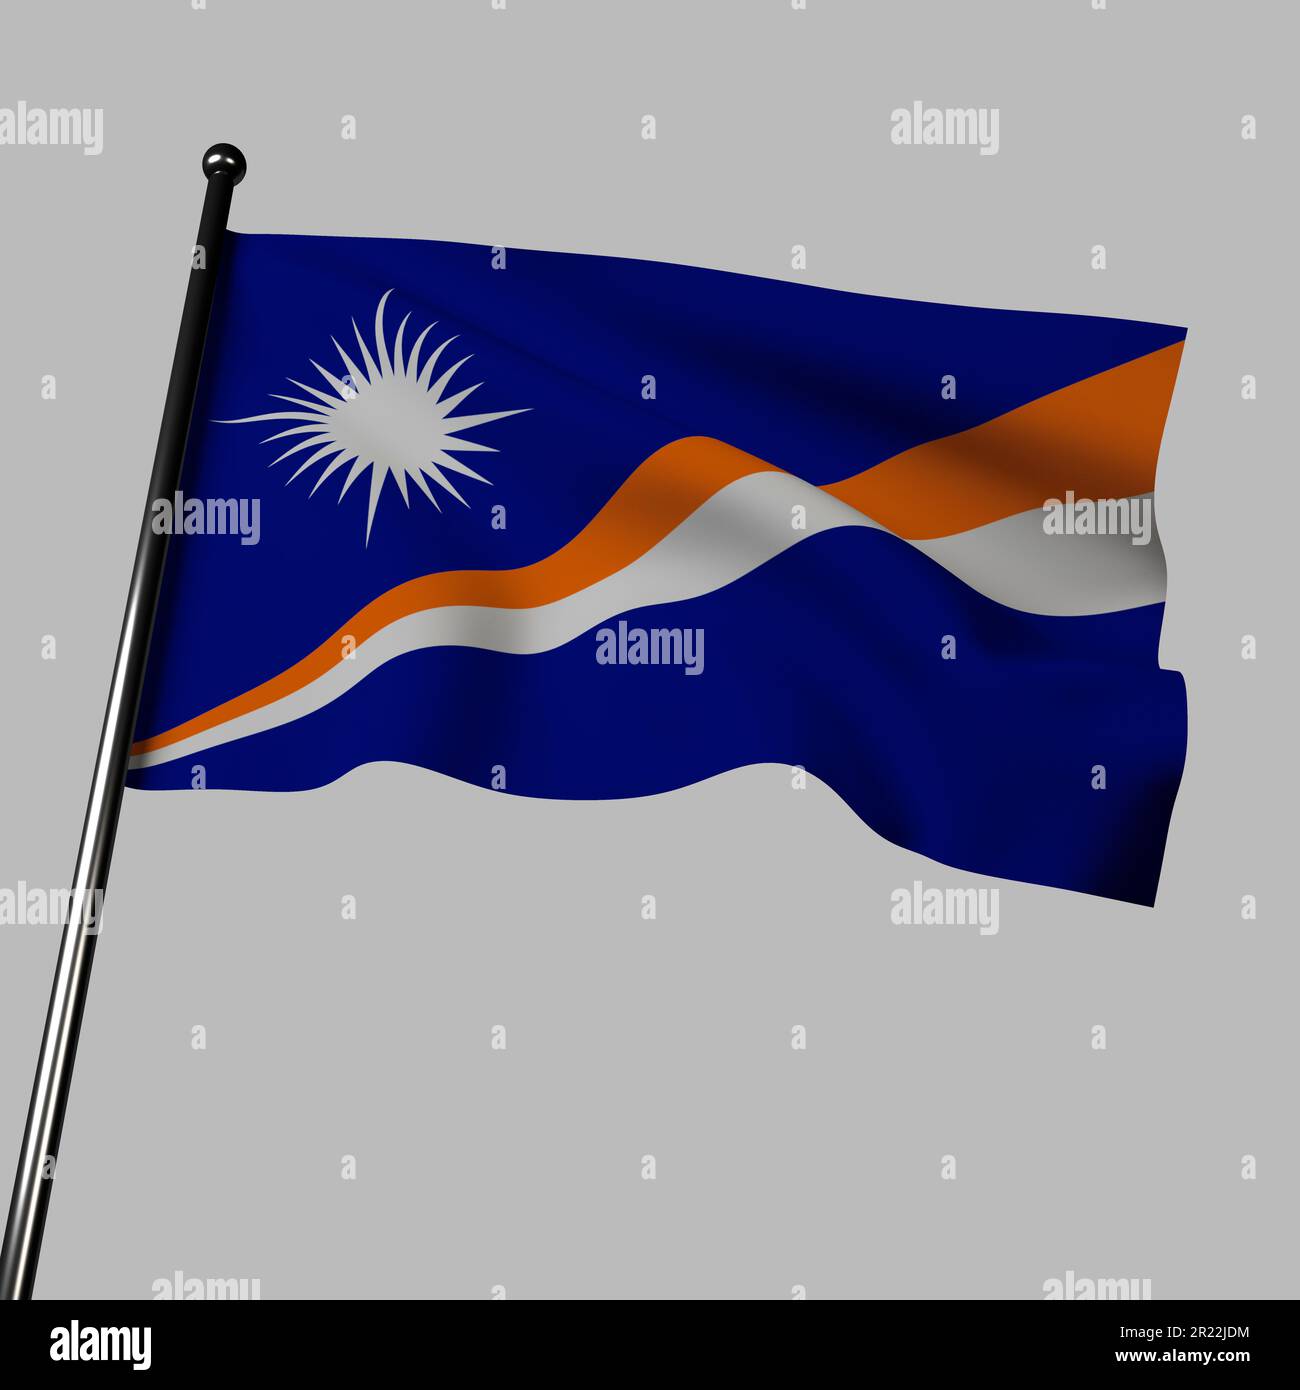 Die Flagge der Marshallinseln winkt im Wind auf grauem Hintergrund. 3D Abbildung mit einem blauen Feld mit zwei orangefarbenen und weißen diagonalen Streifen. T Stockfoto